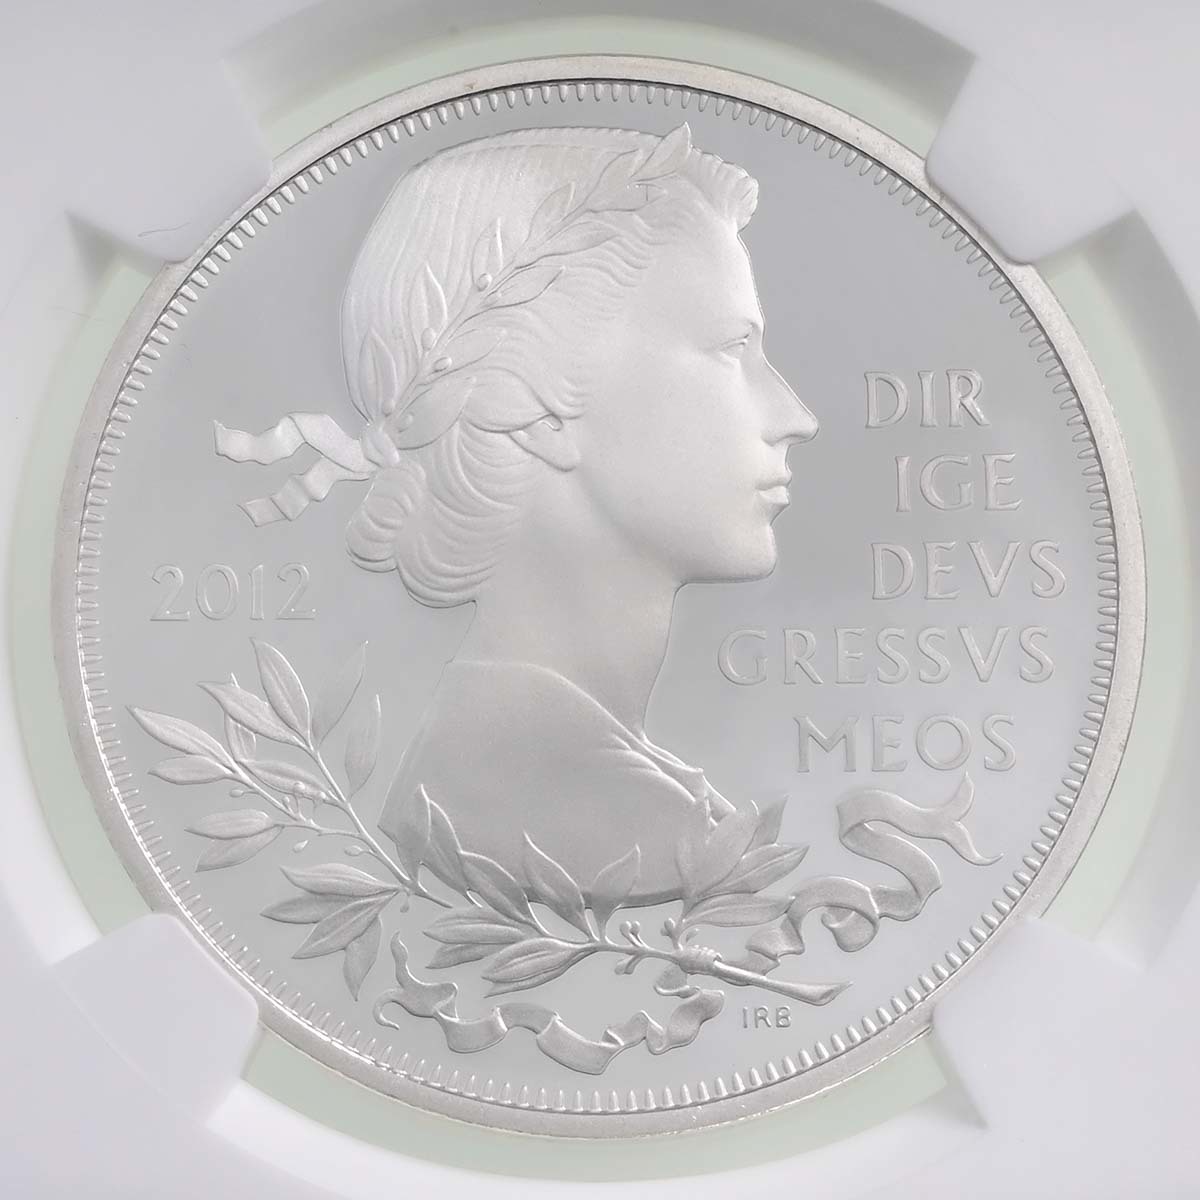 UK12DJSP 2012 Elizabeth II Diamond Jubilee £5 Crown Silver Proof Coin NGC Graded PF 70 Ultra Cameo Reverse